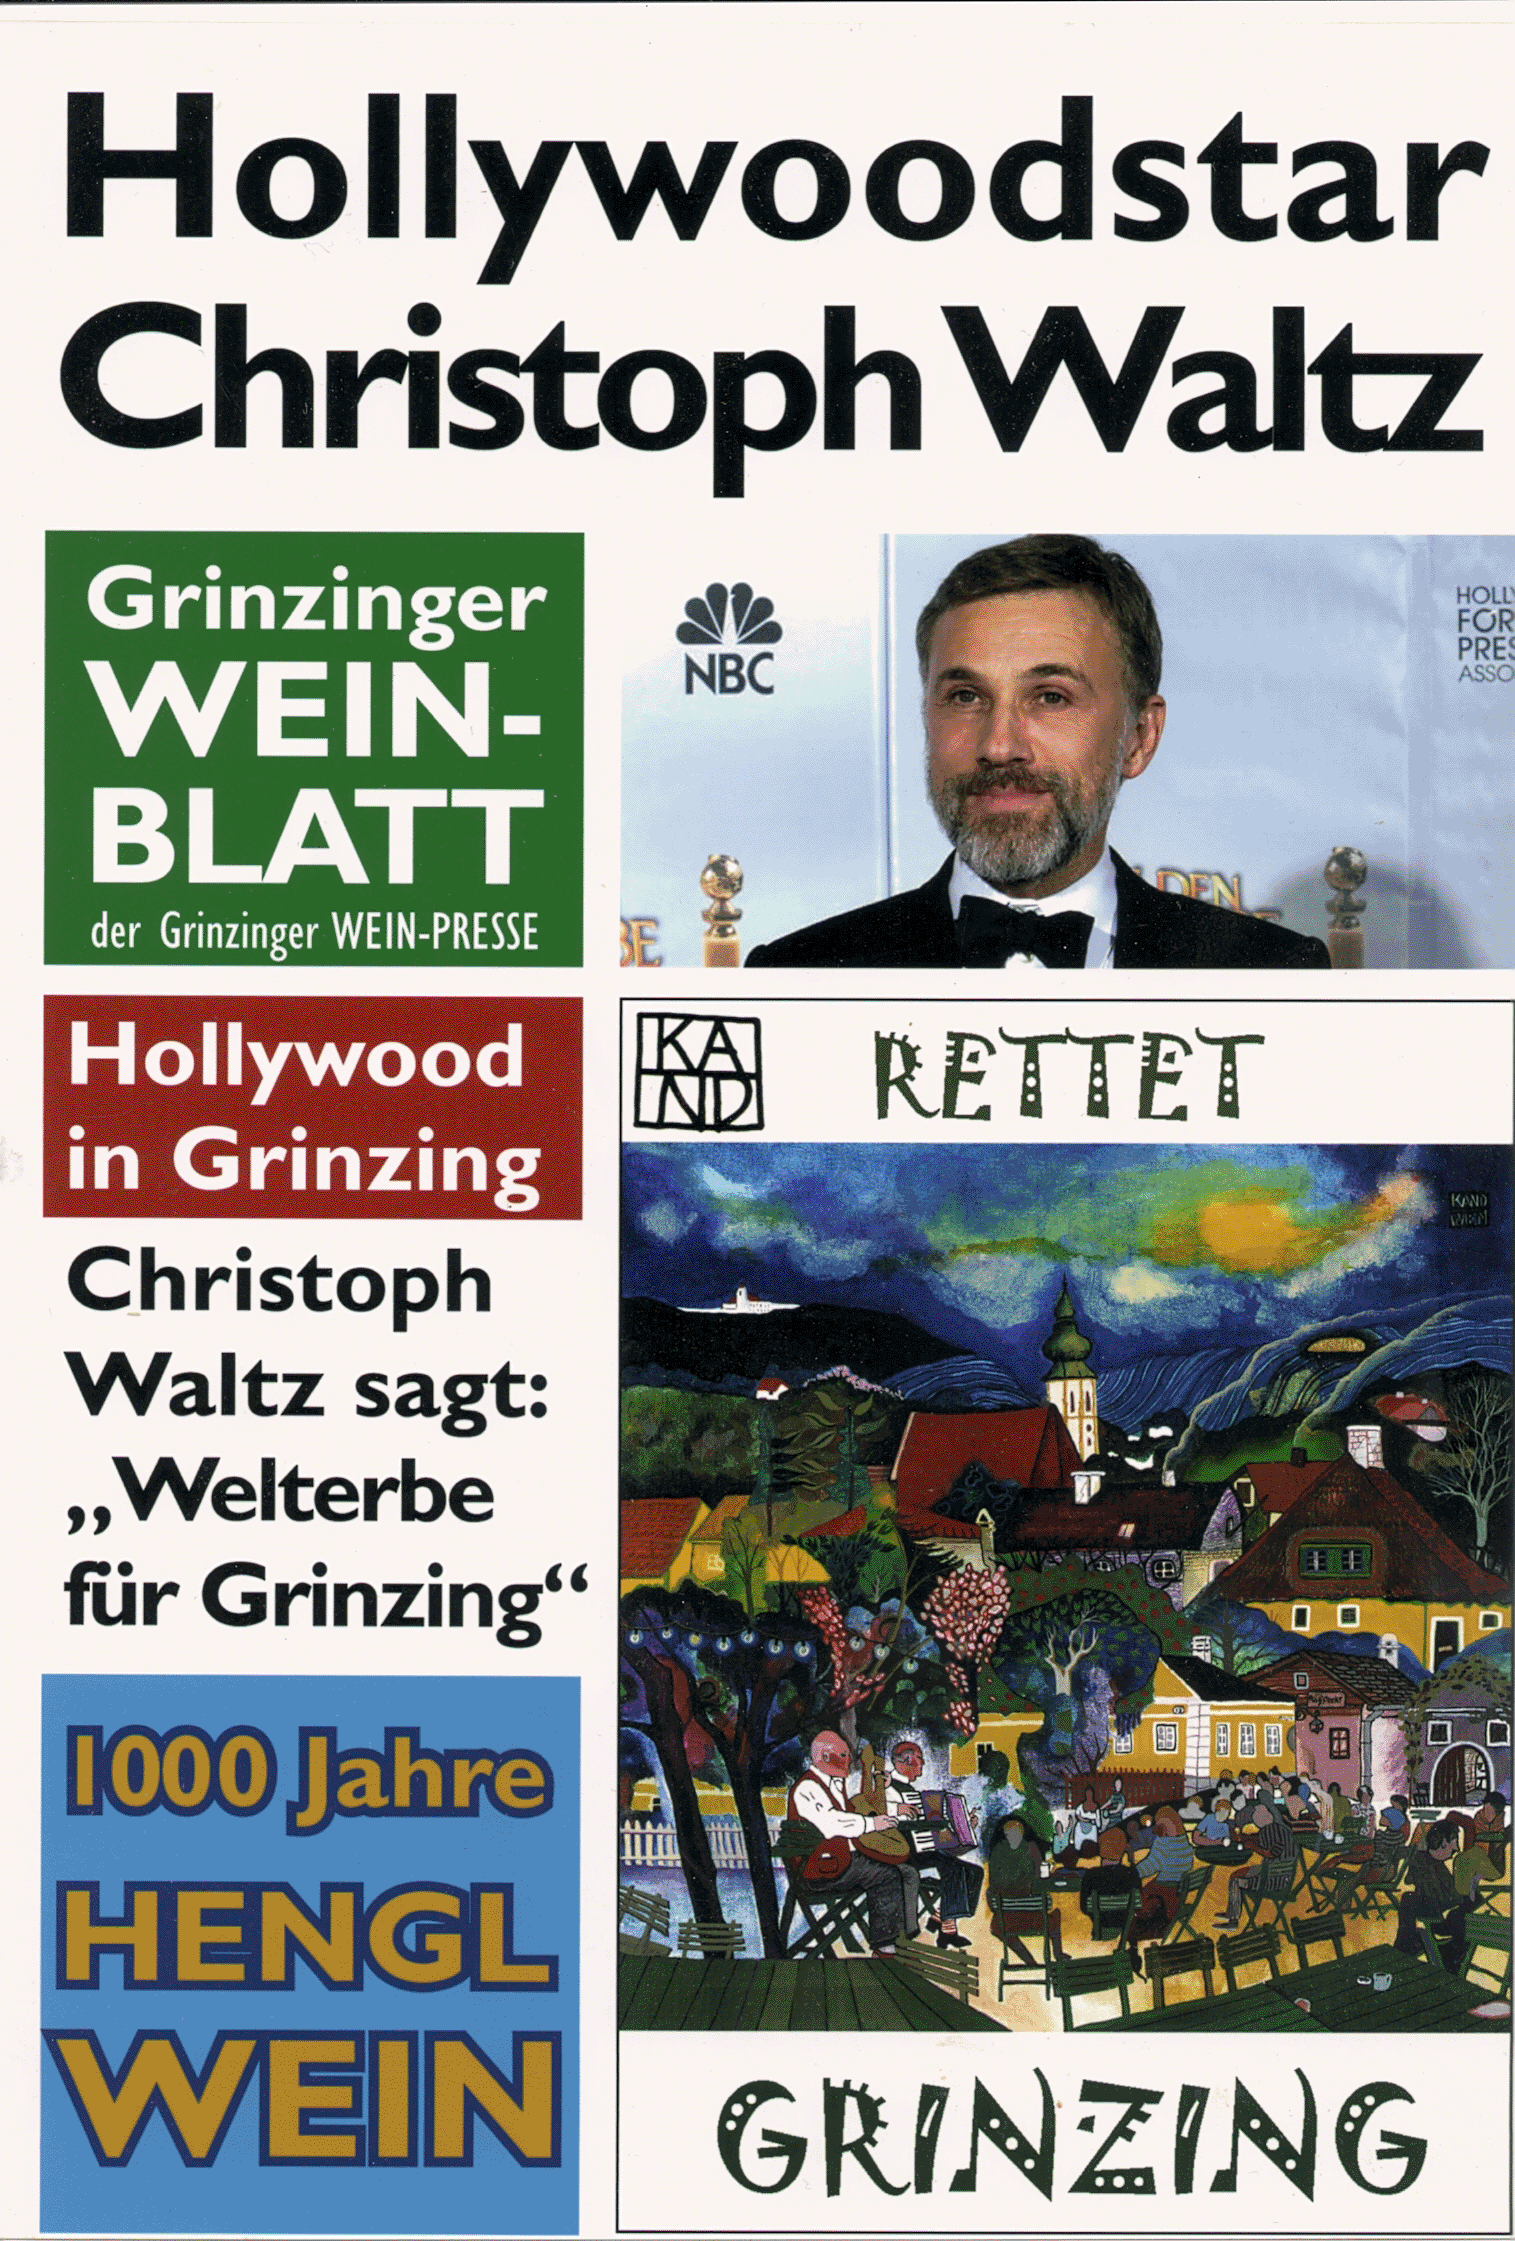 Hollywoodstar Christoph Waltz | Weltkulturerbe Grinzing